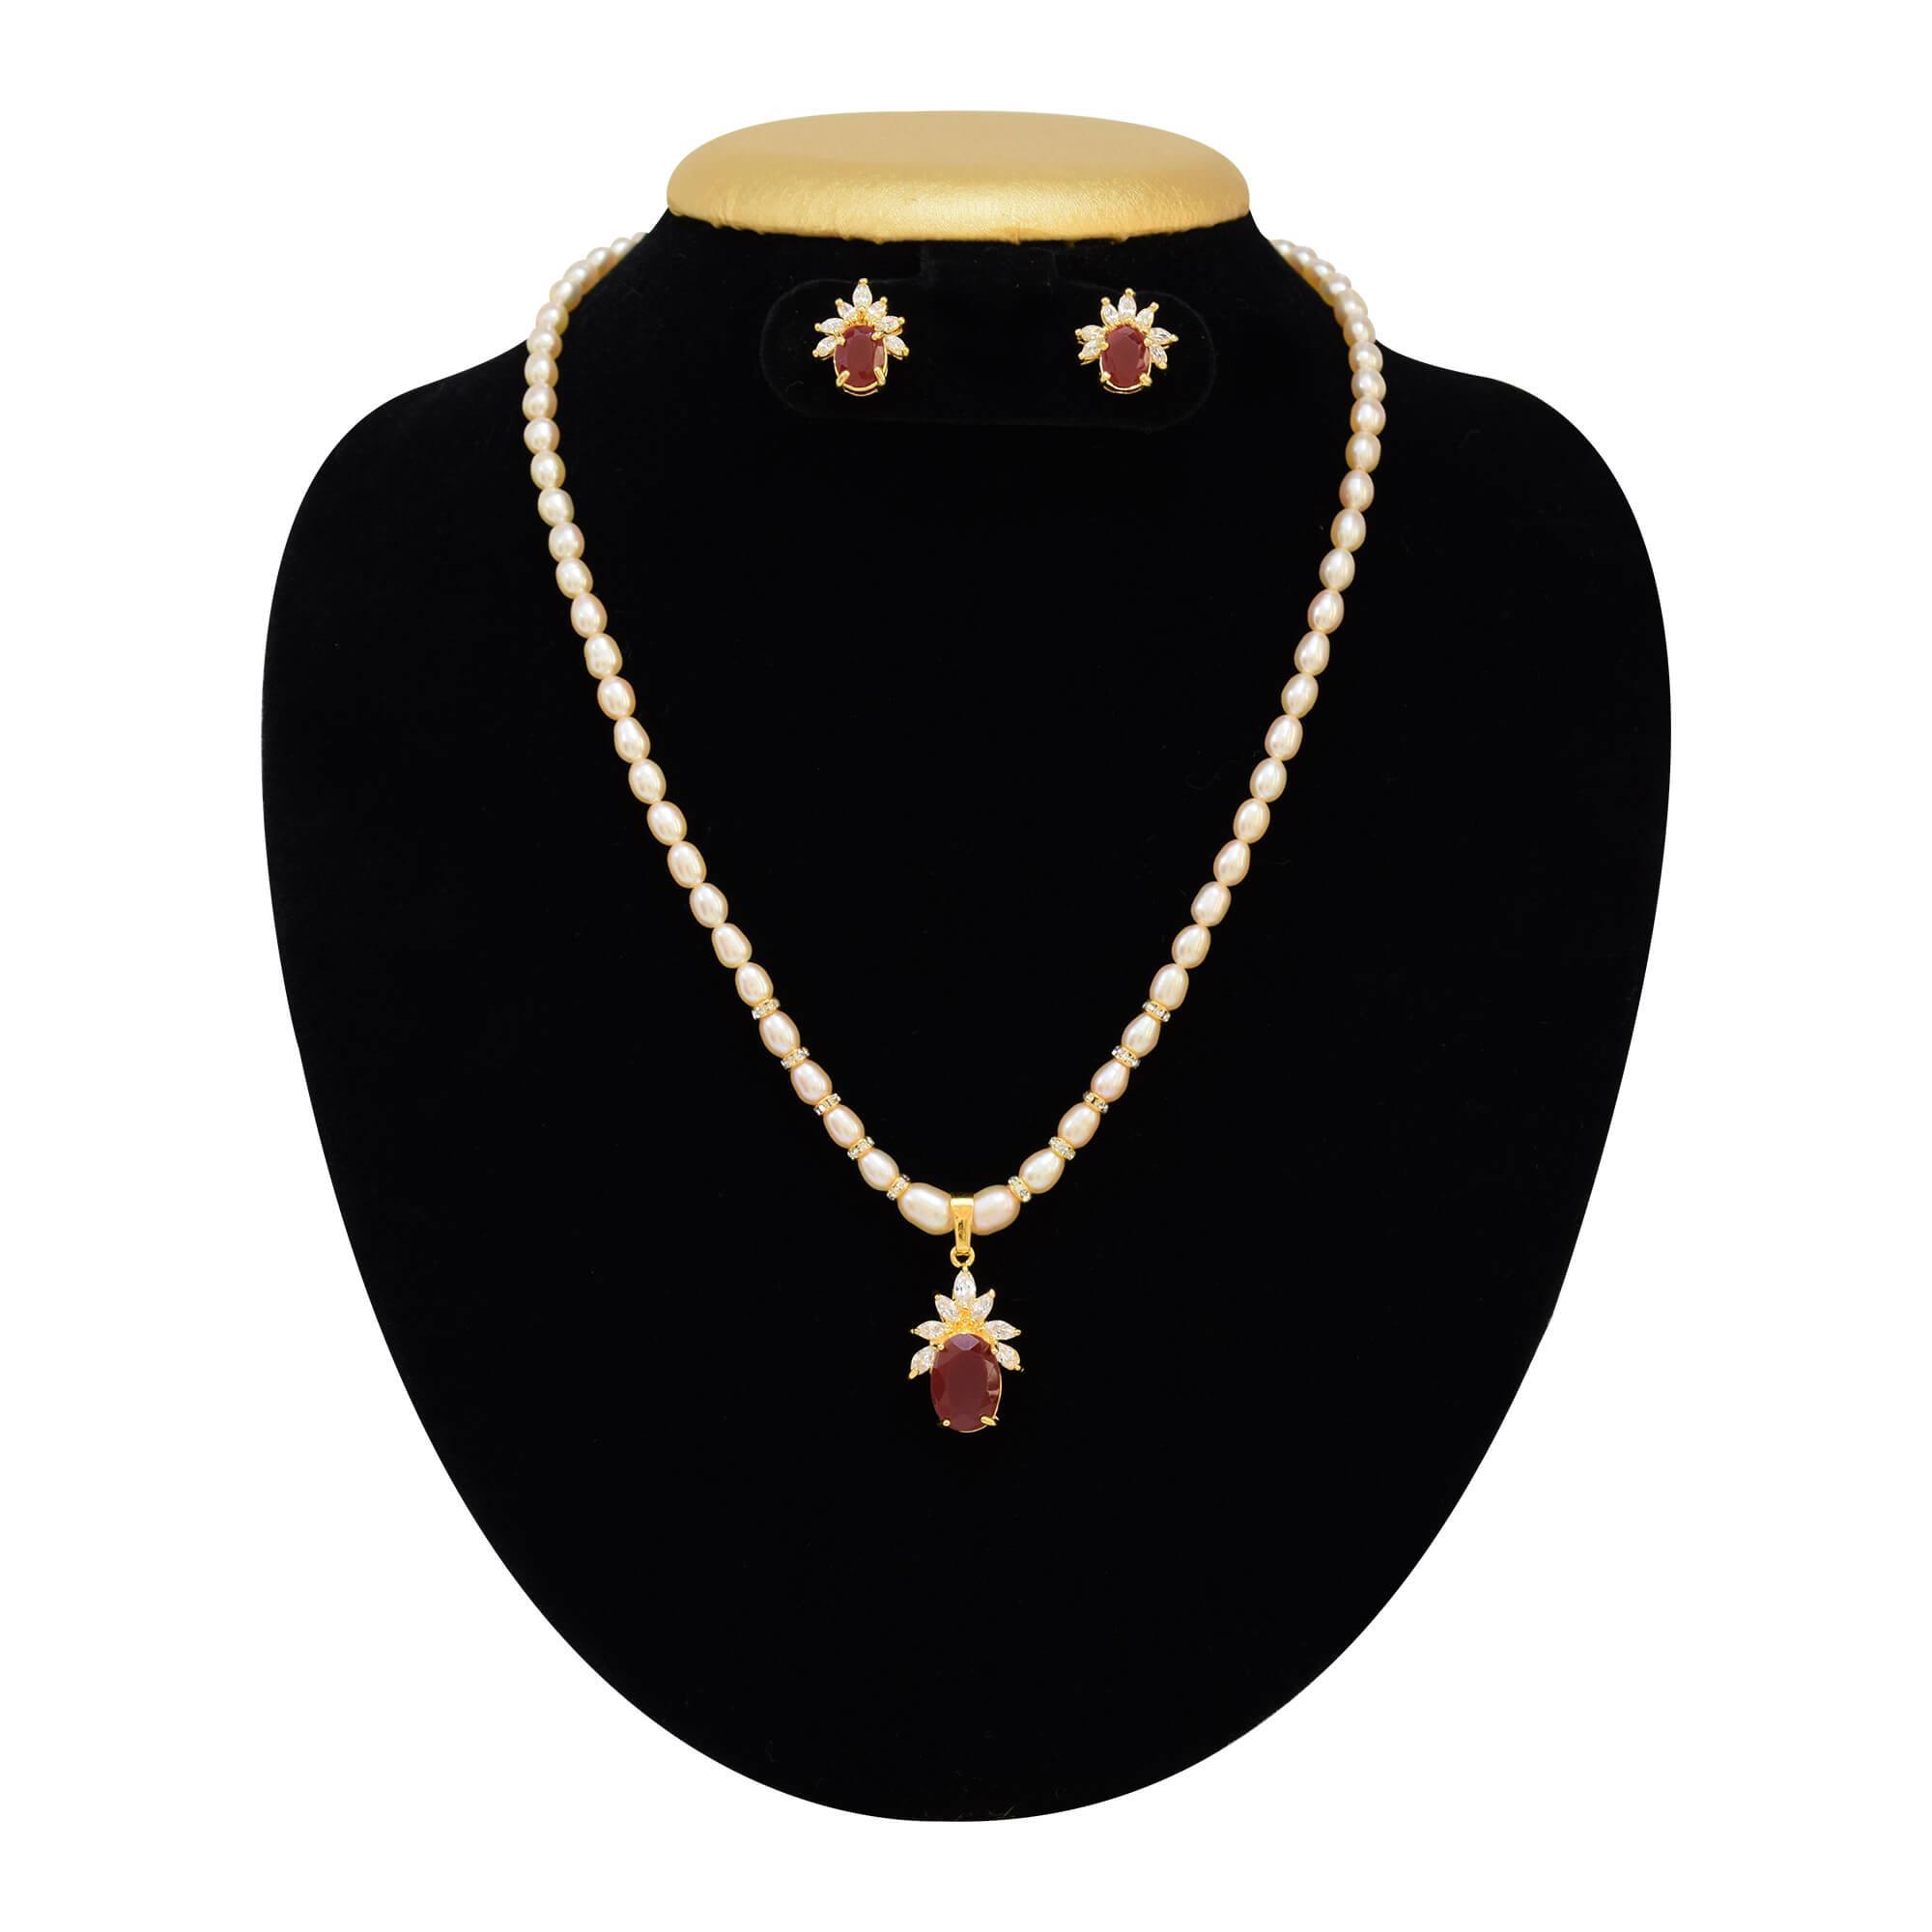 Ruby Necklaces | Kendra Scott Jewelry